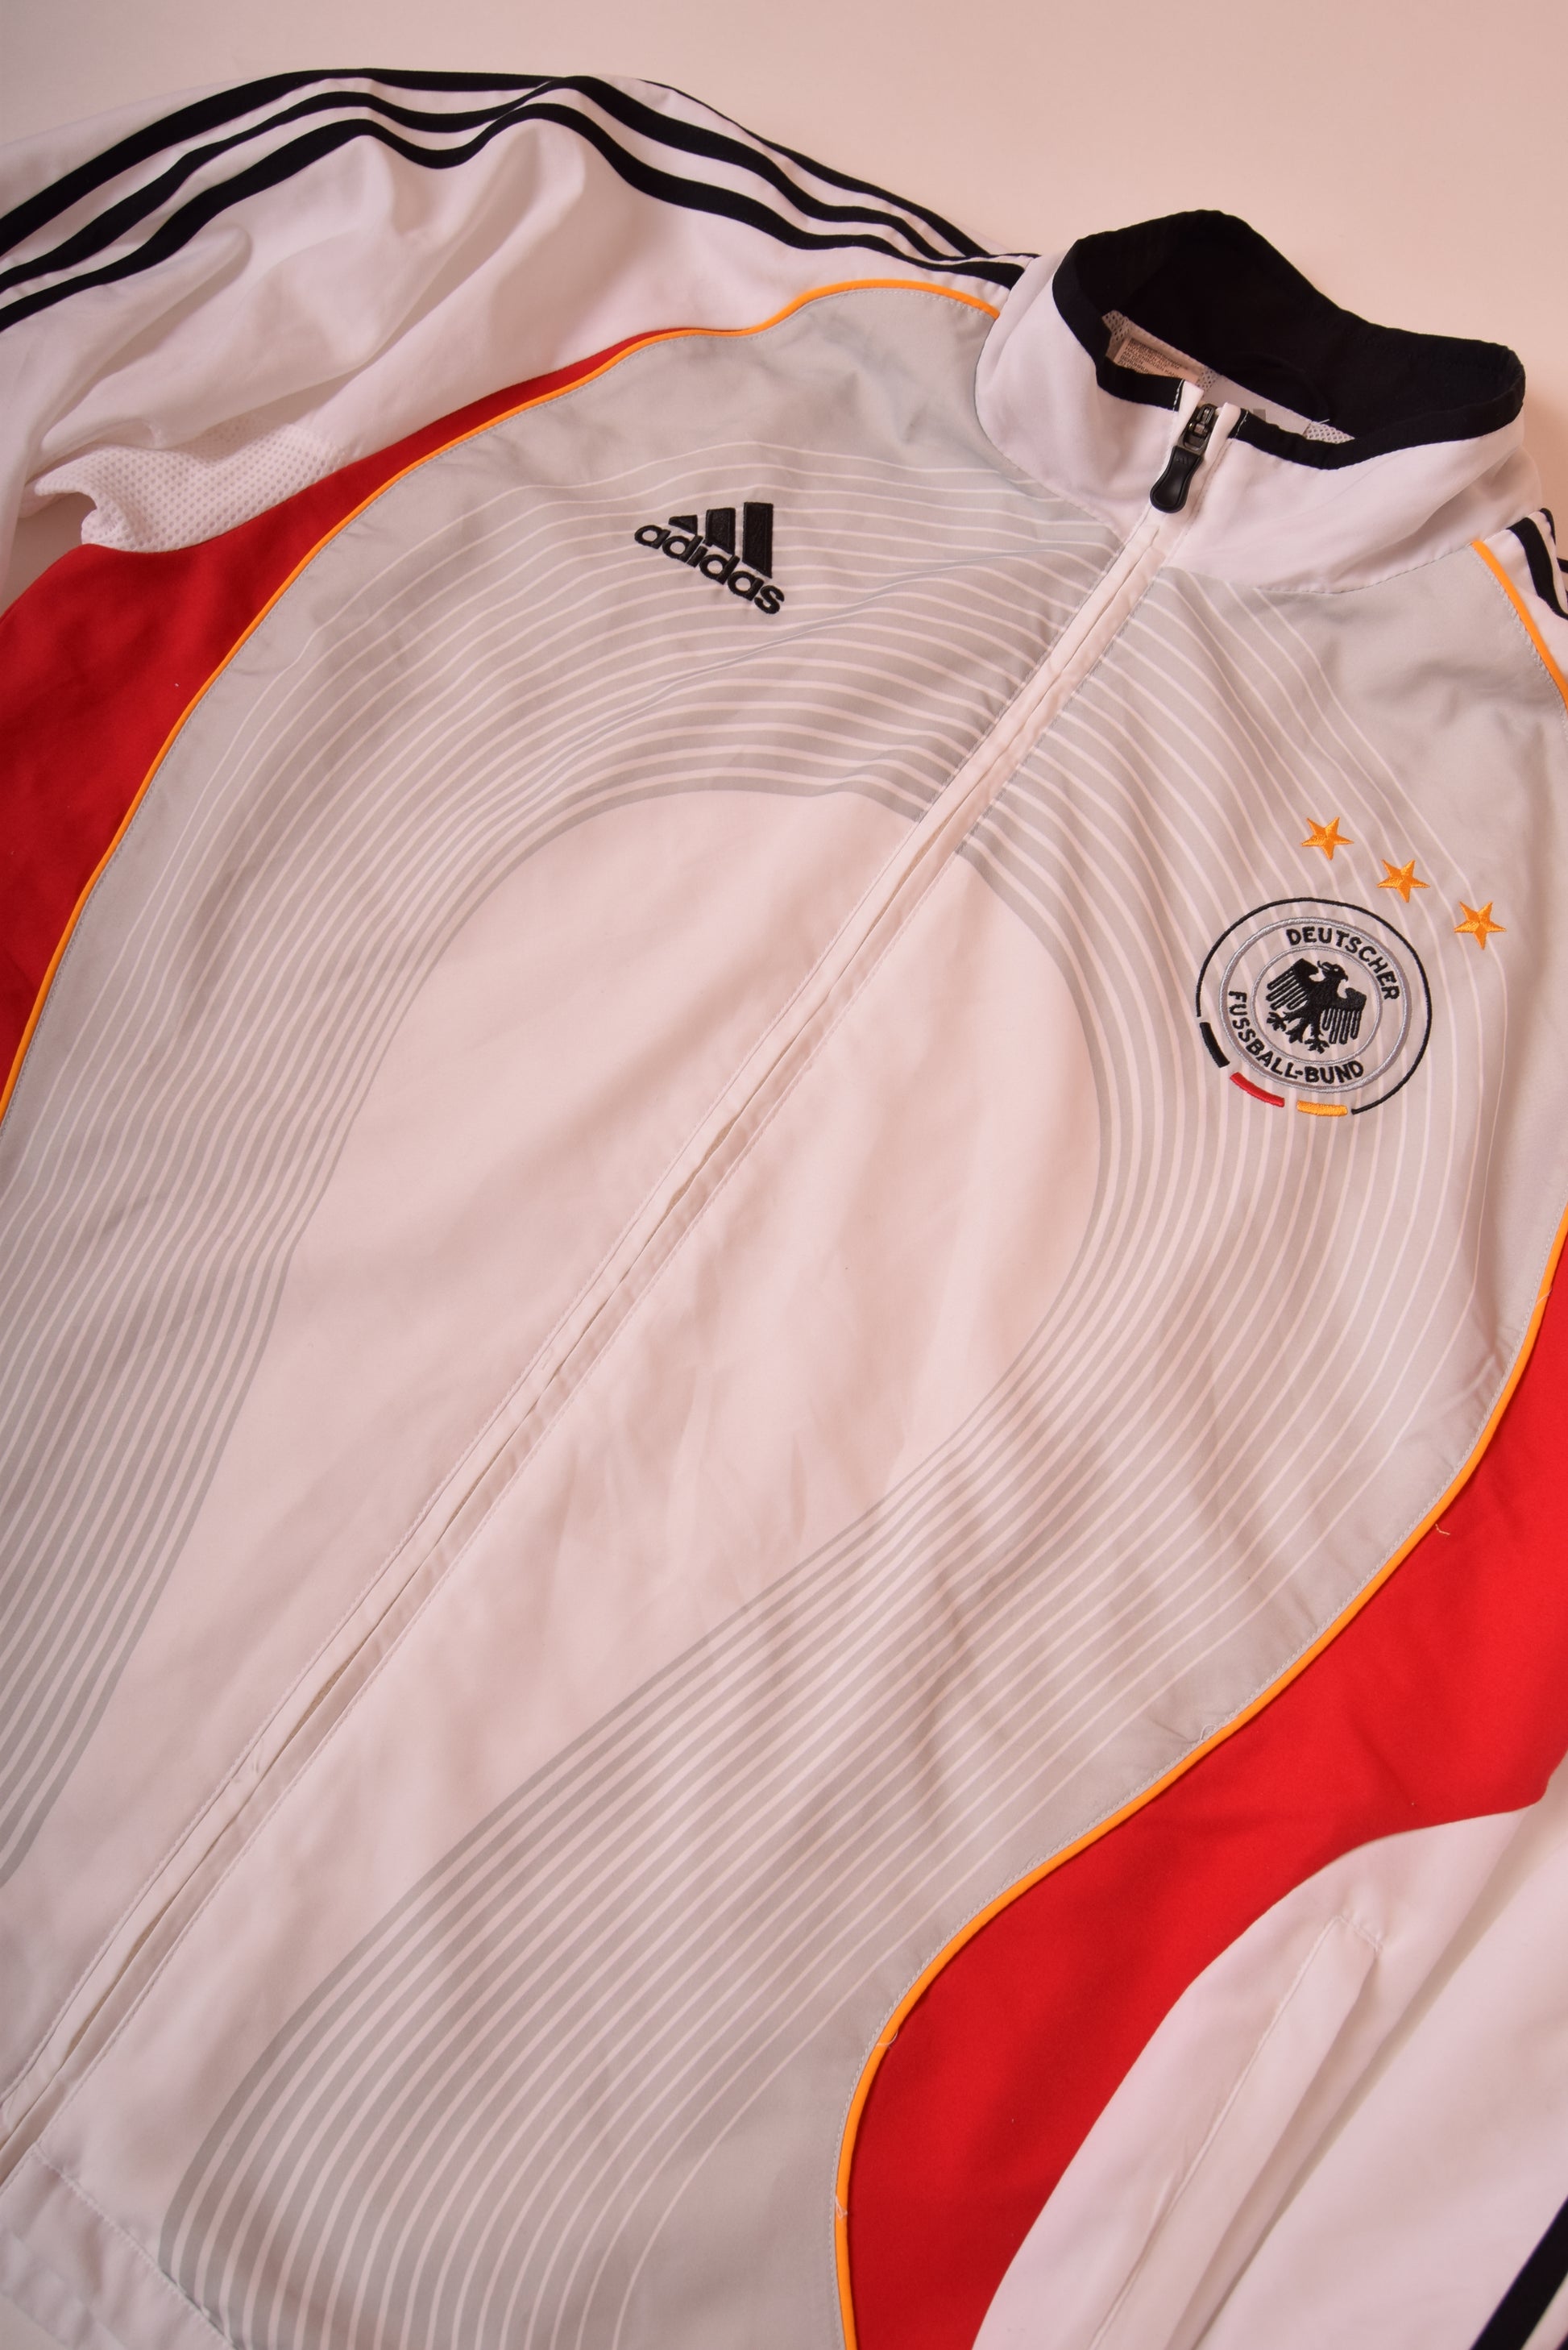 Germany Adidas Jacket 2006-2007 Football Team